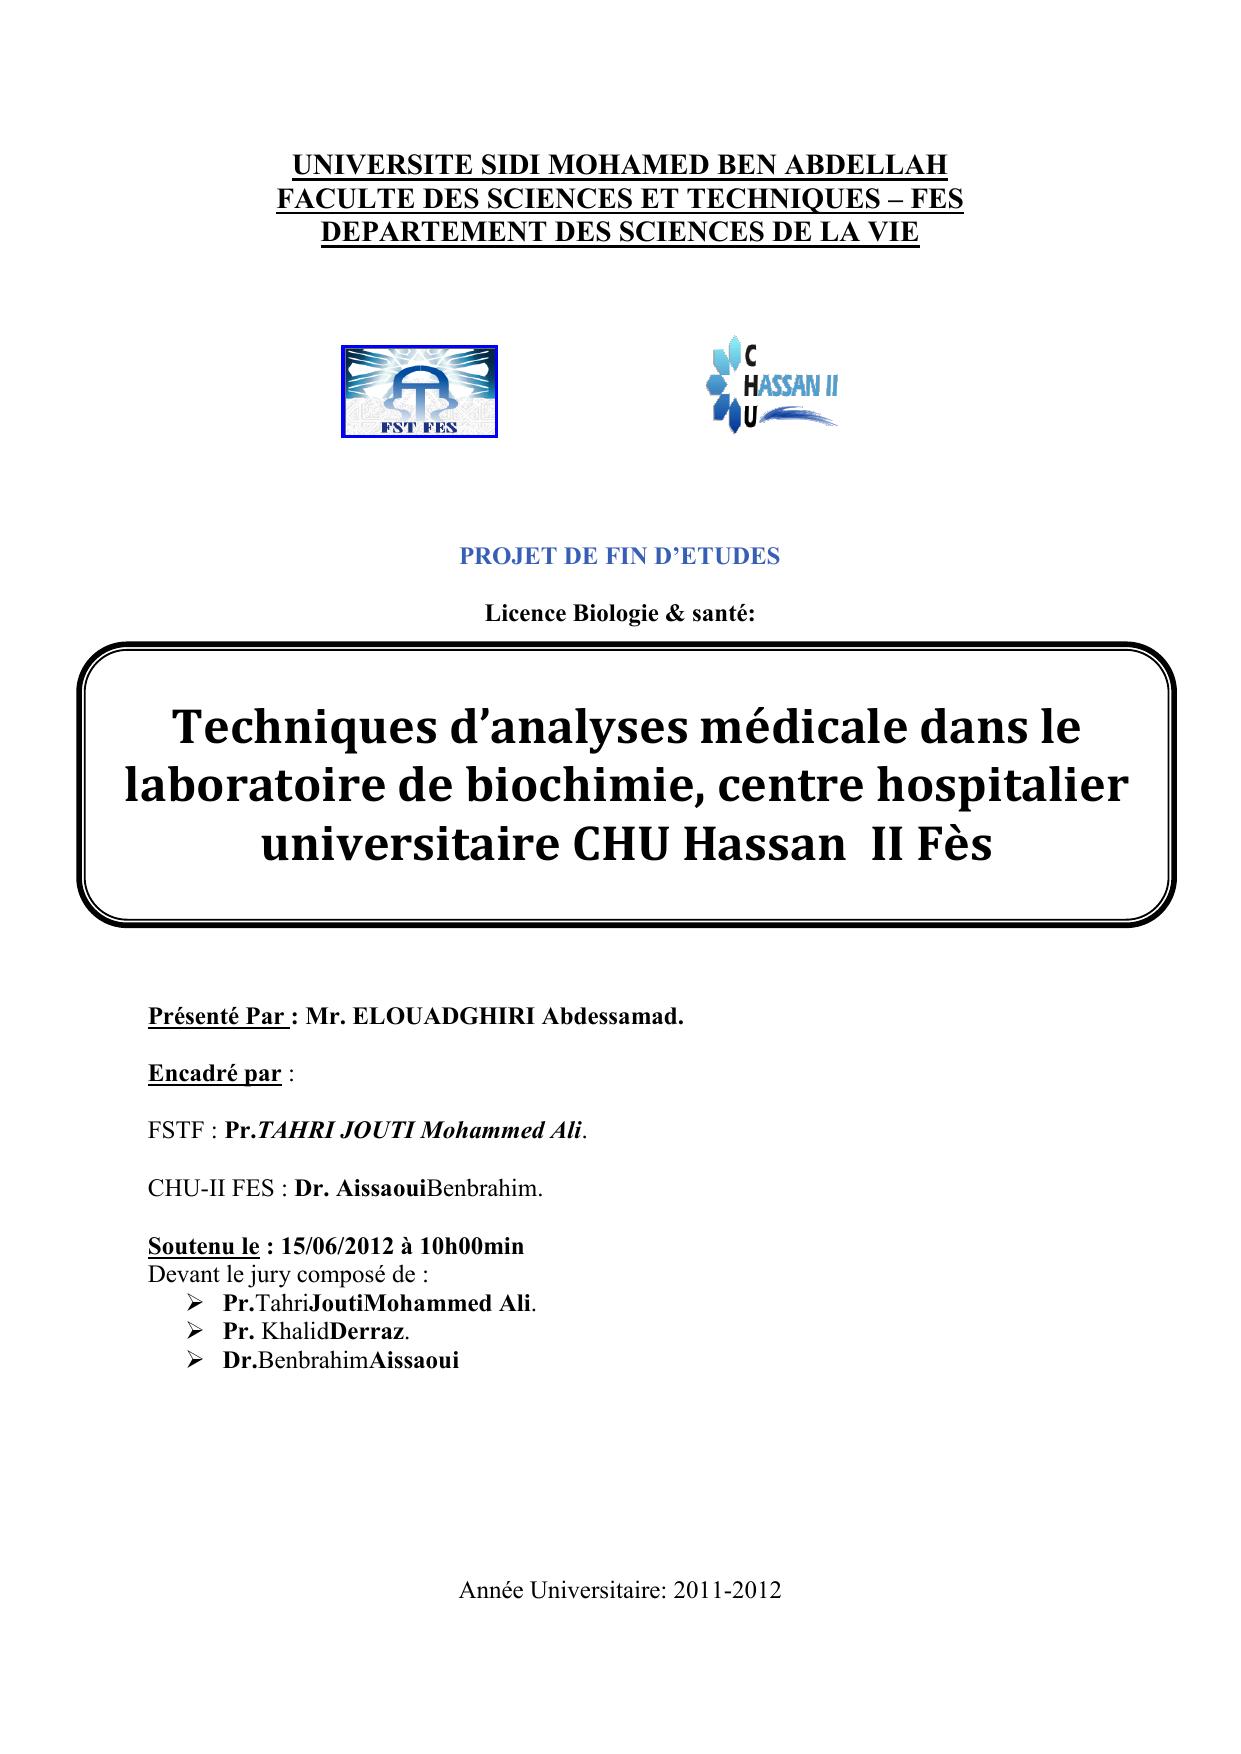 Techniques d’analyses médicale dans le laboratoire de biochimie, centre hospitalier universitaire CHU Hassan II Fès